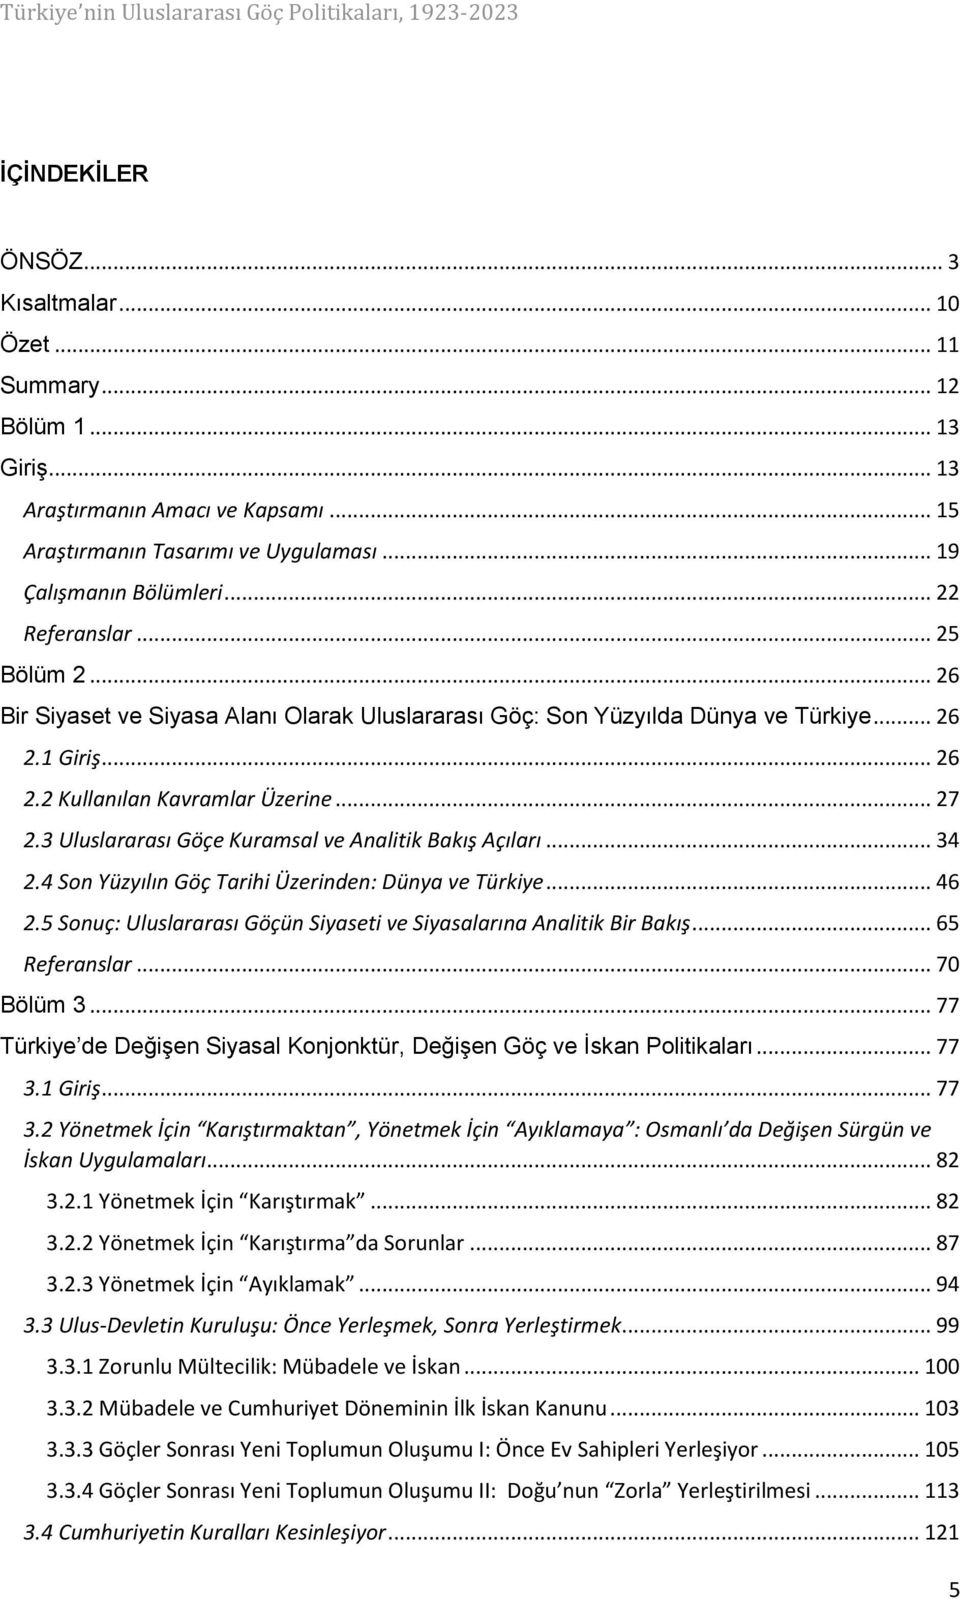 3 Uluslararası Göçe Kuramsal ve Analitik Bakış Açıları... 34 2.4 Son Yüzyılın Göç Tarihi Üzerinden: Dünya ve Türkiye... 46 2.5 Sonuç: Uluslararası Göçün Siyaseti ve Siyasalarına Analitik Bir Bakış.